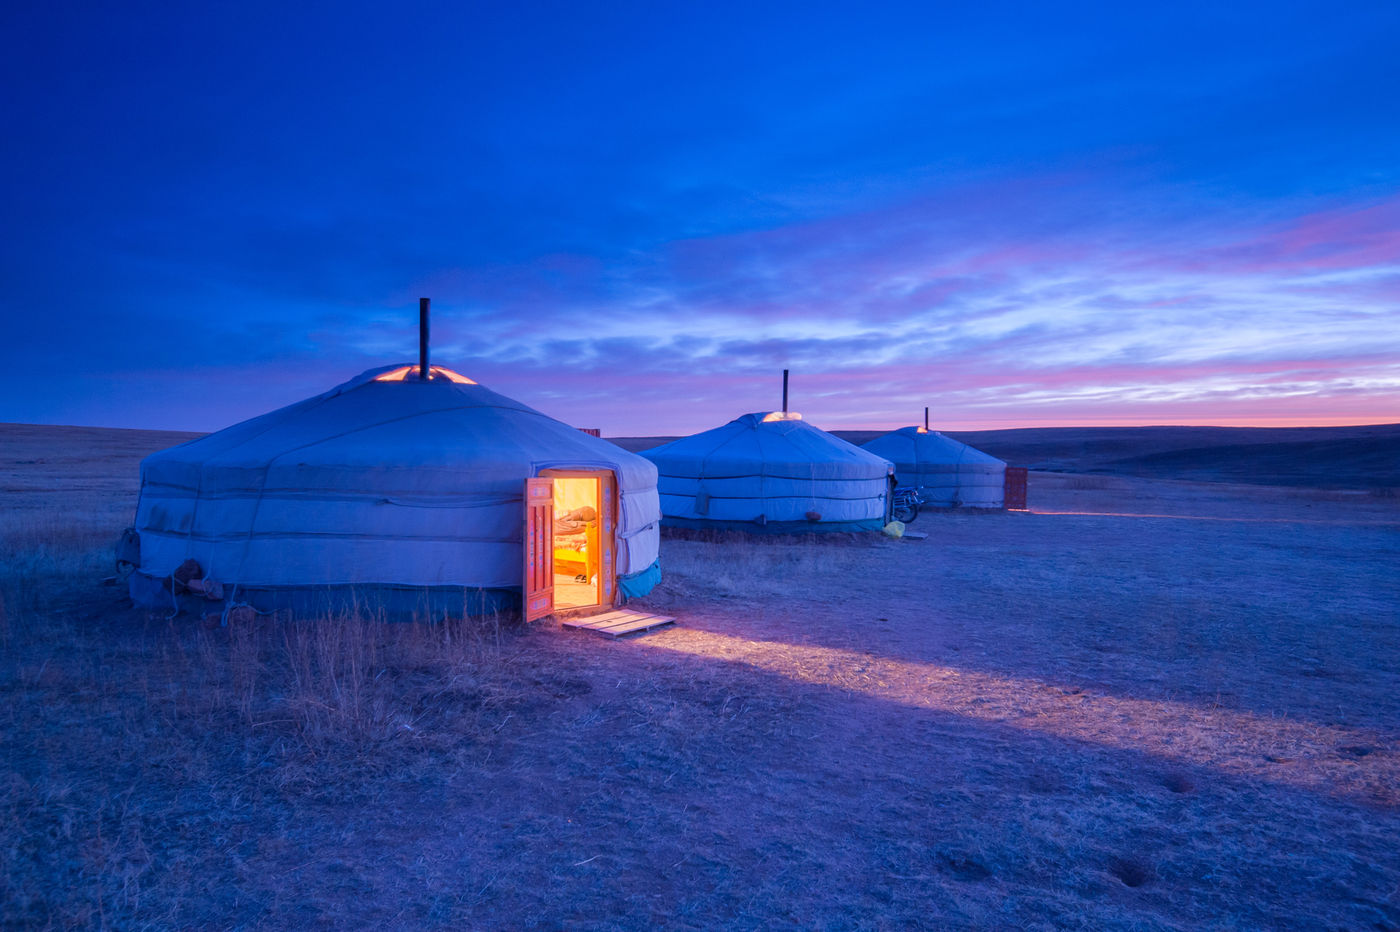 De yurts (gers) en het uur van het blauwe licht leveren een magisch beeld op. © Billy Herman